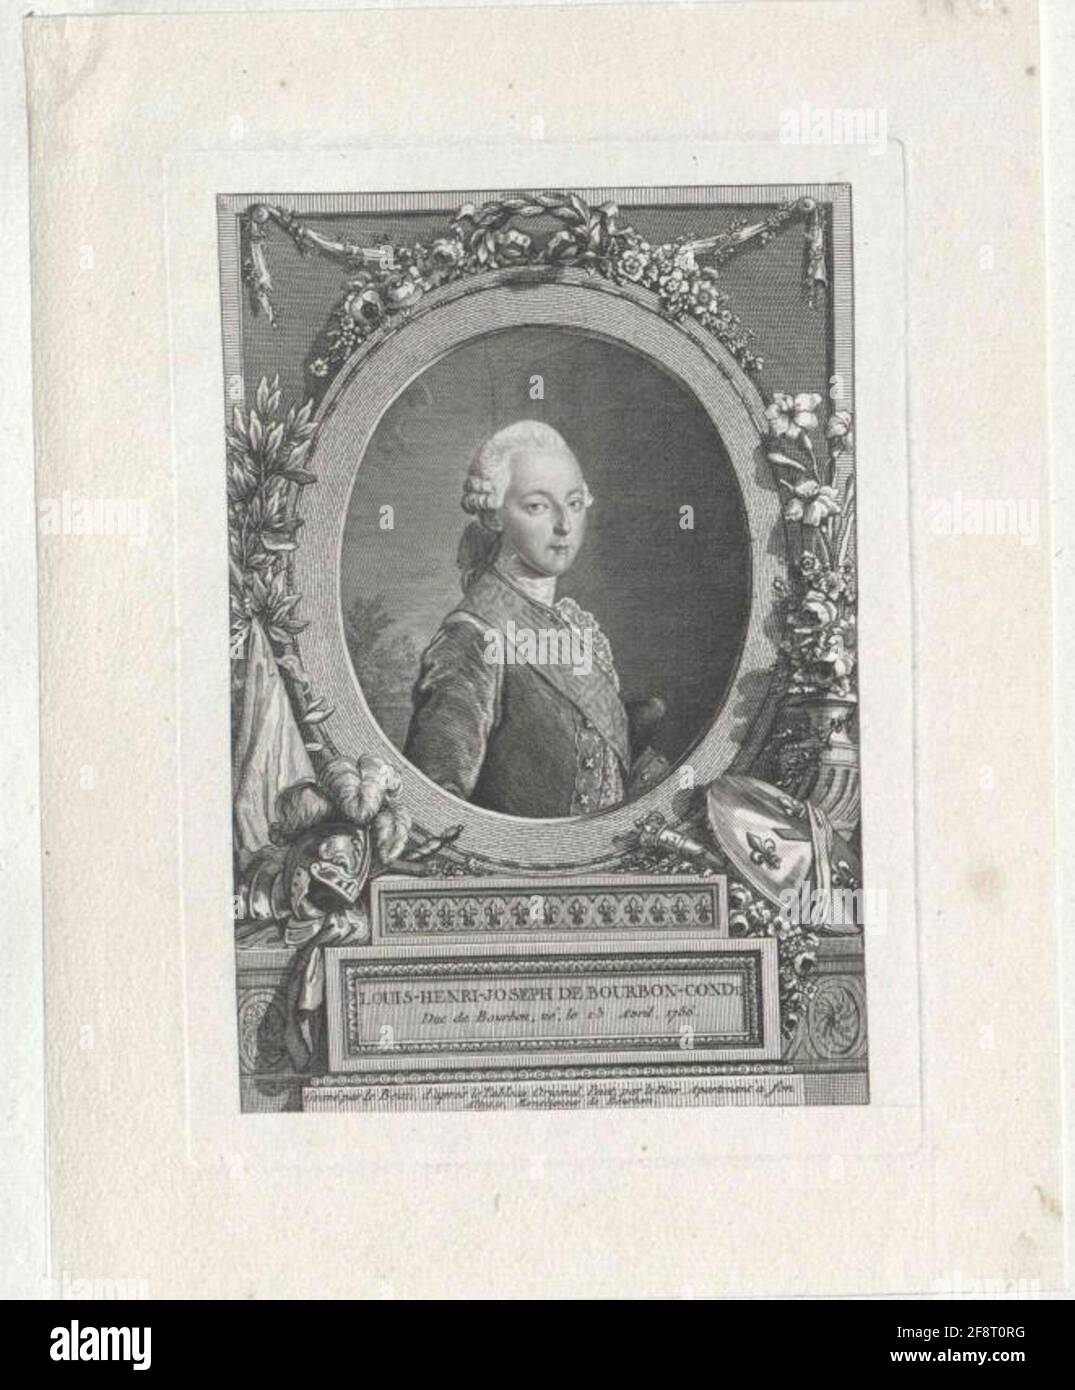 Condé, Louis-Henry-Joseph Prince Duc de Bourbon. Stock Photo